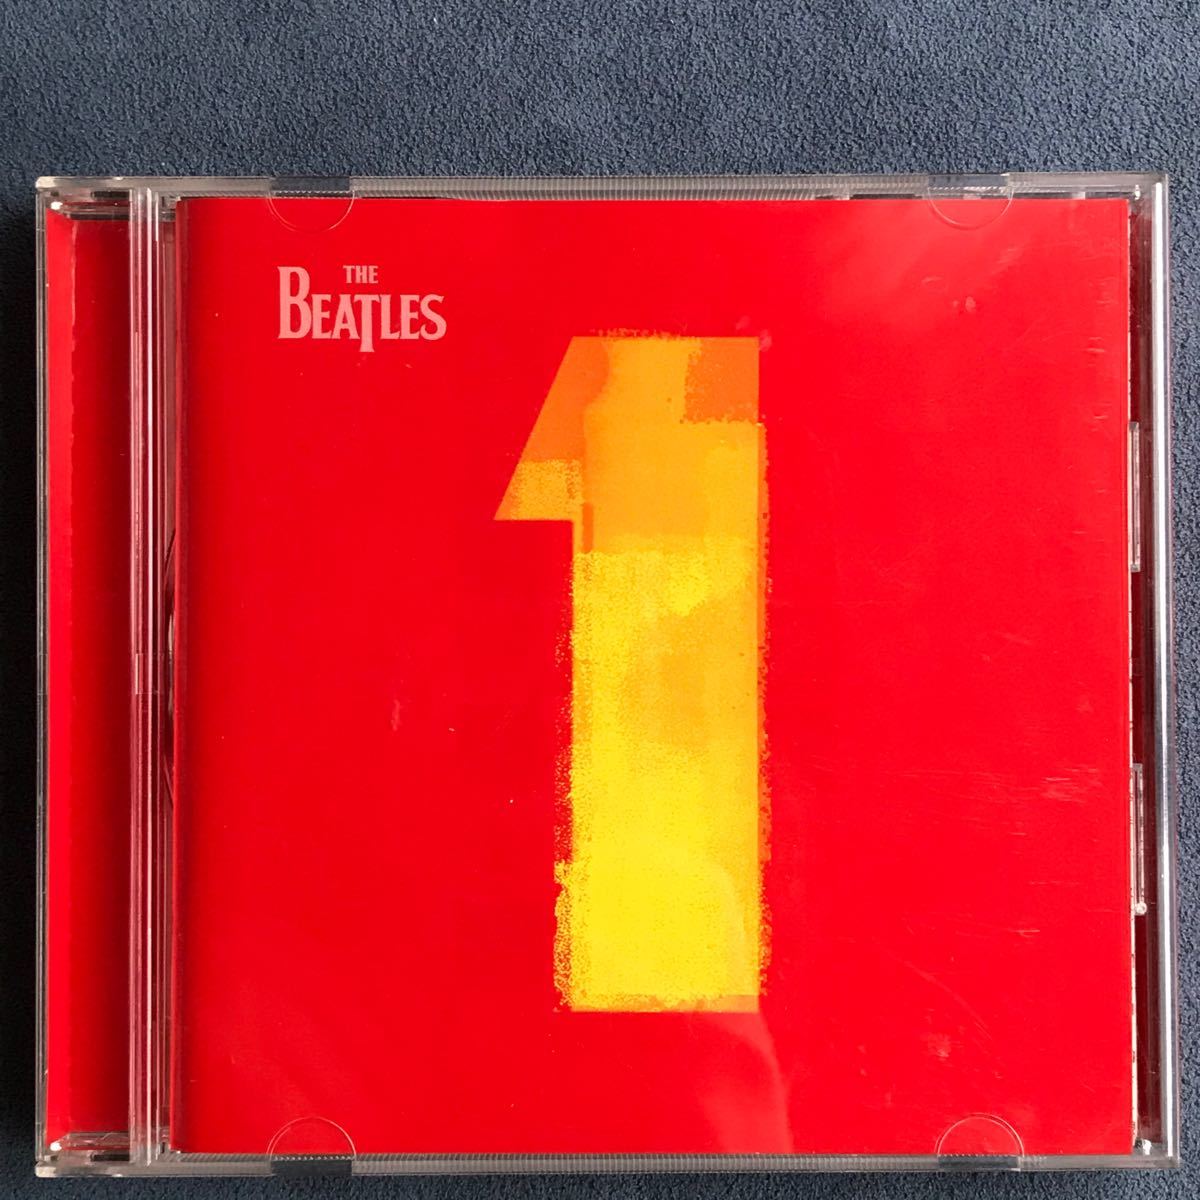 洋楽CD・ビートルズ「THE BEATLES 1」ベスト盤